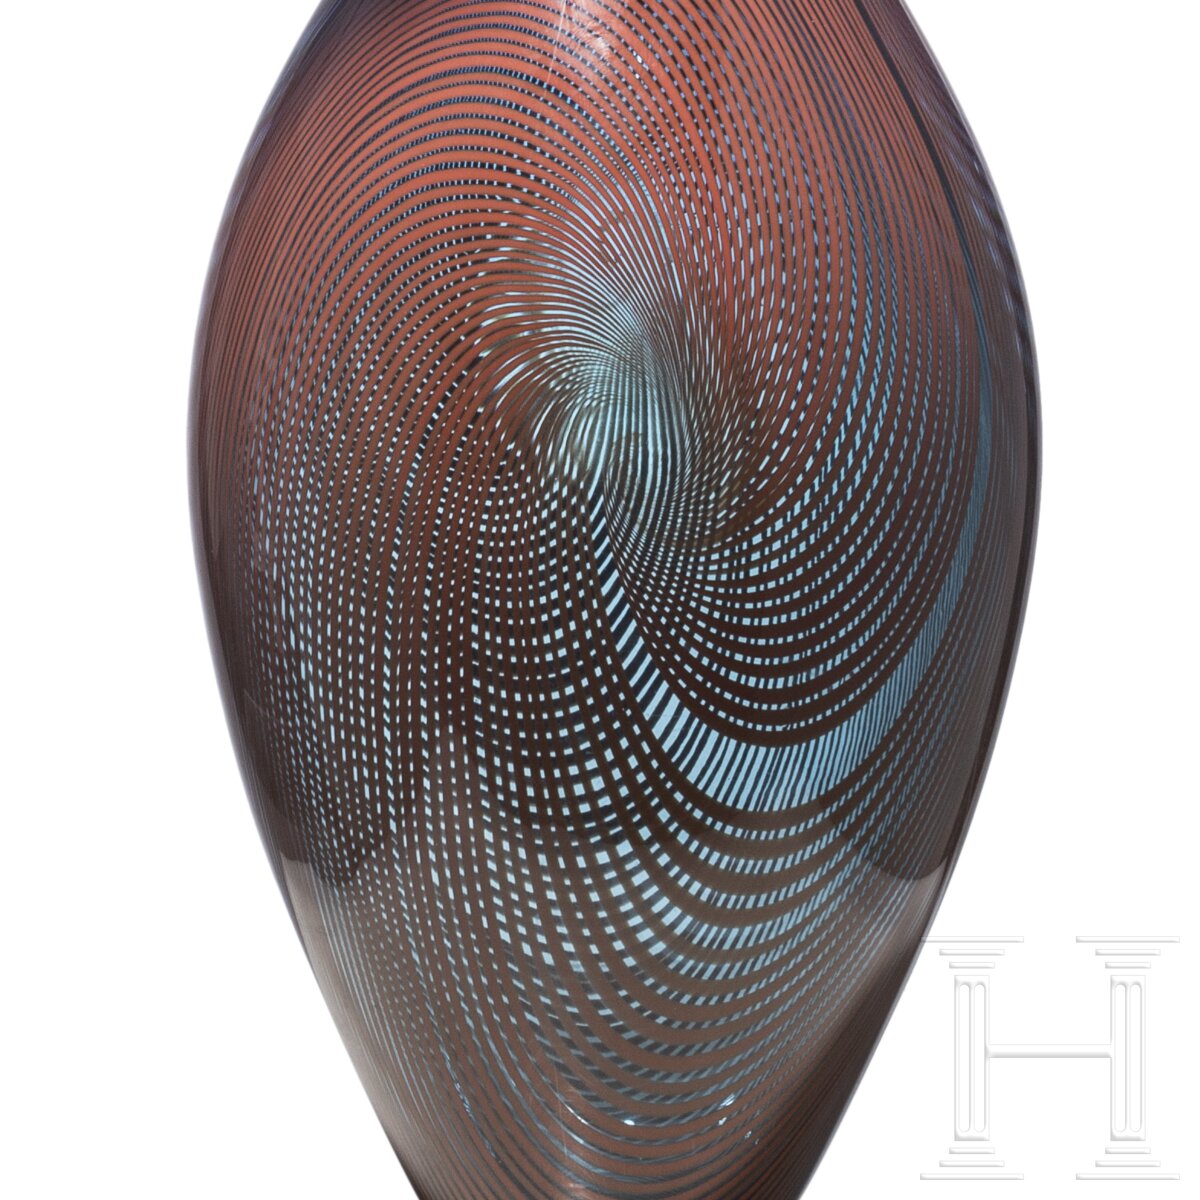 Glasskulptur "Ichibana", Gordon Webster (geboren 1978 in Calgary), datiert 2012 - Image 7 of 7